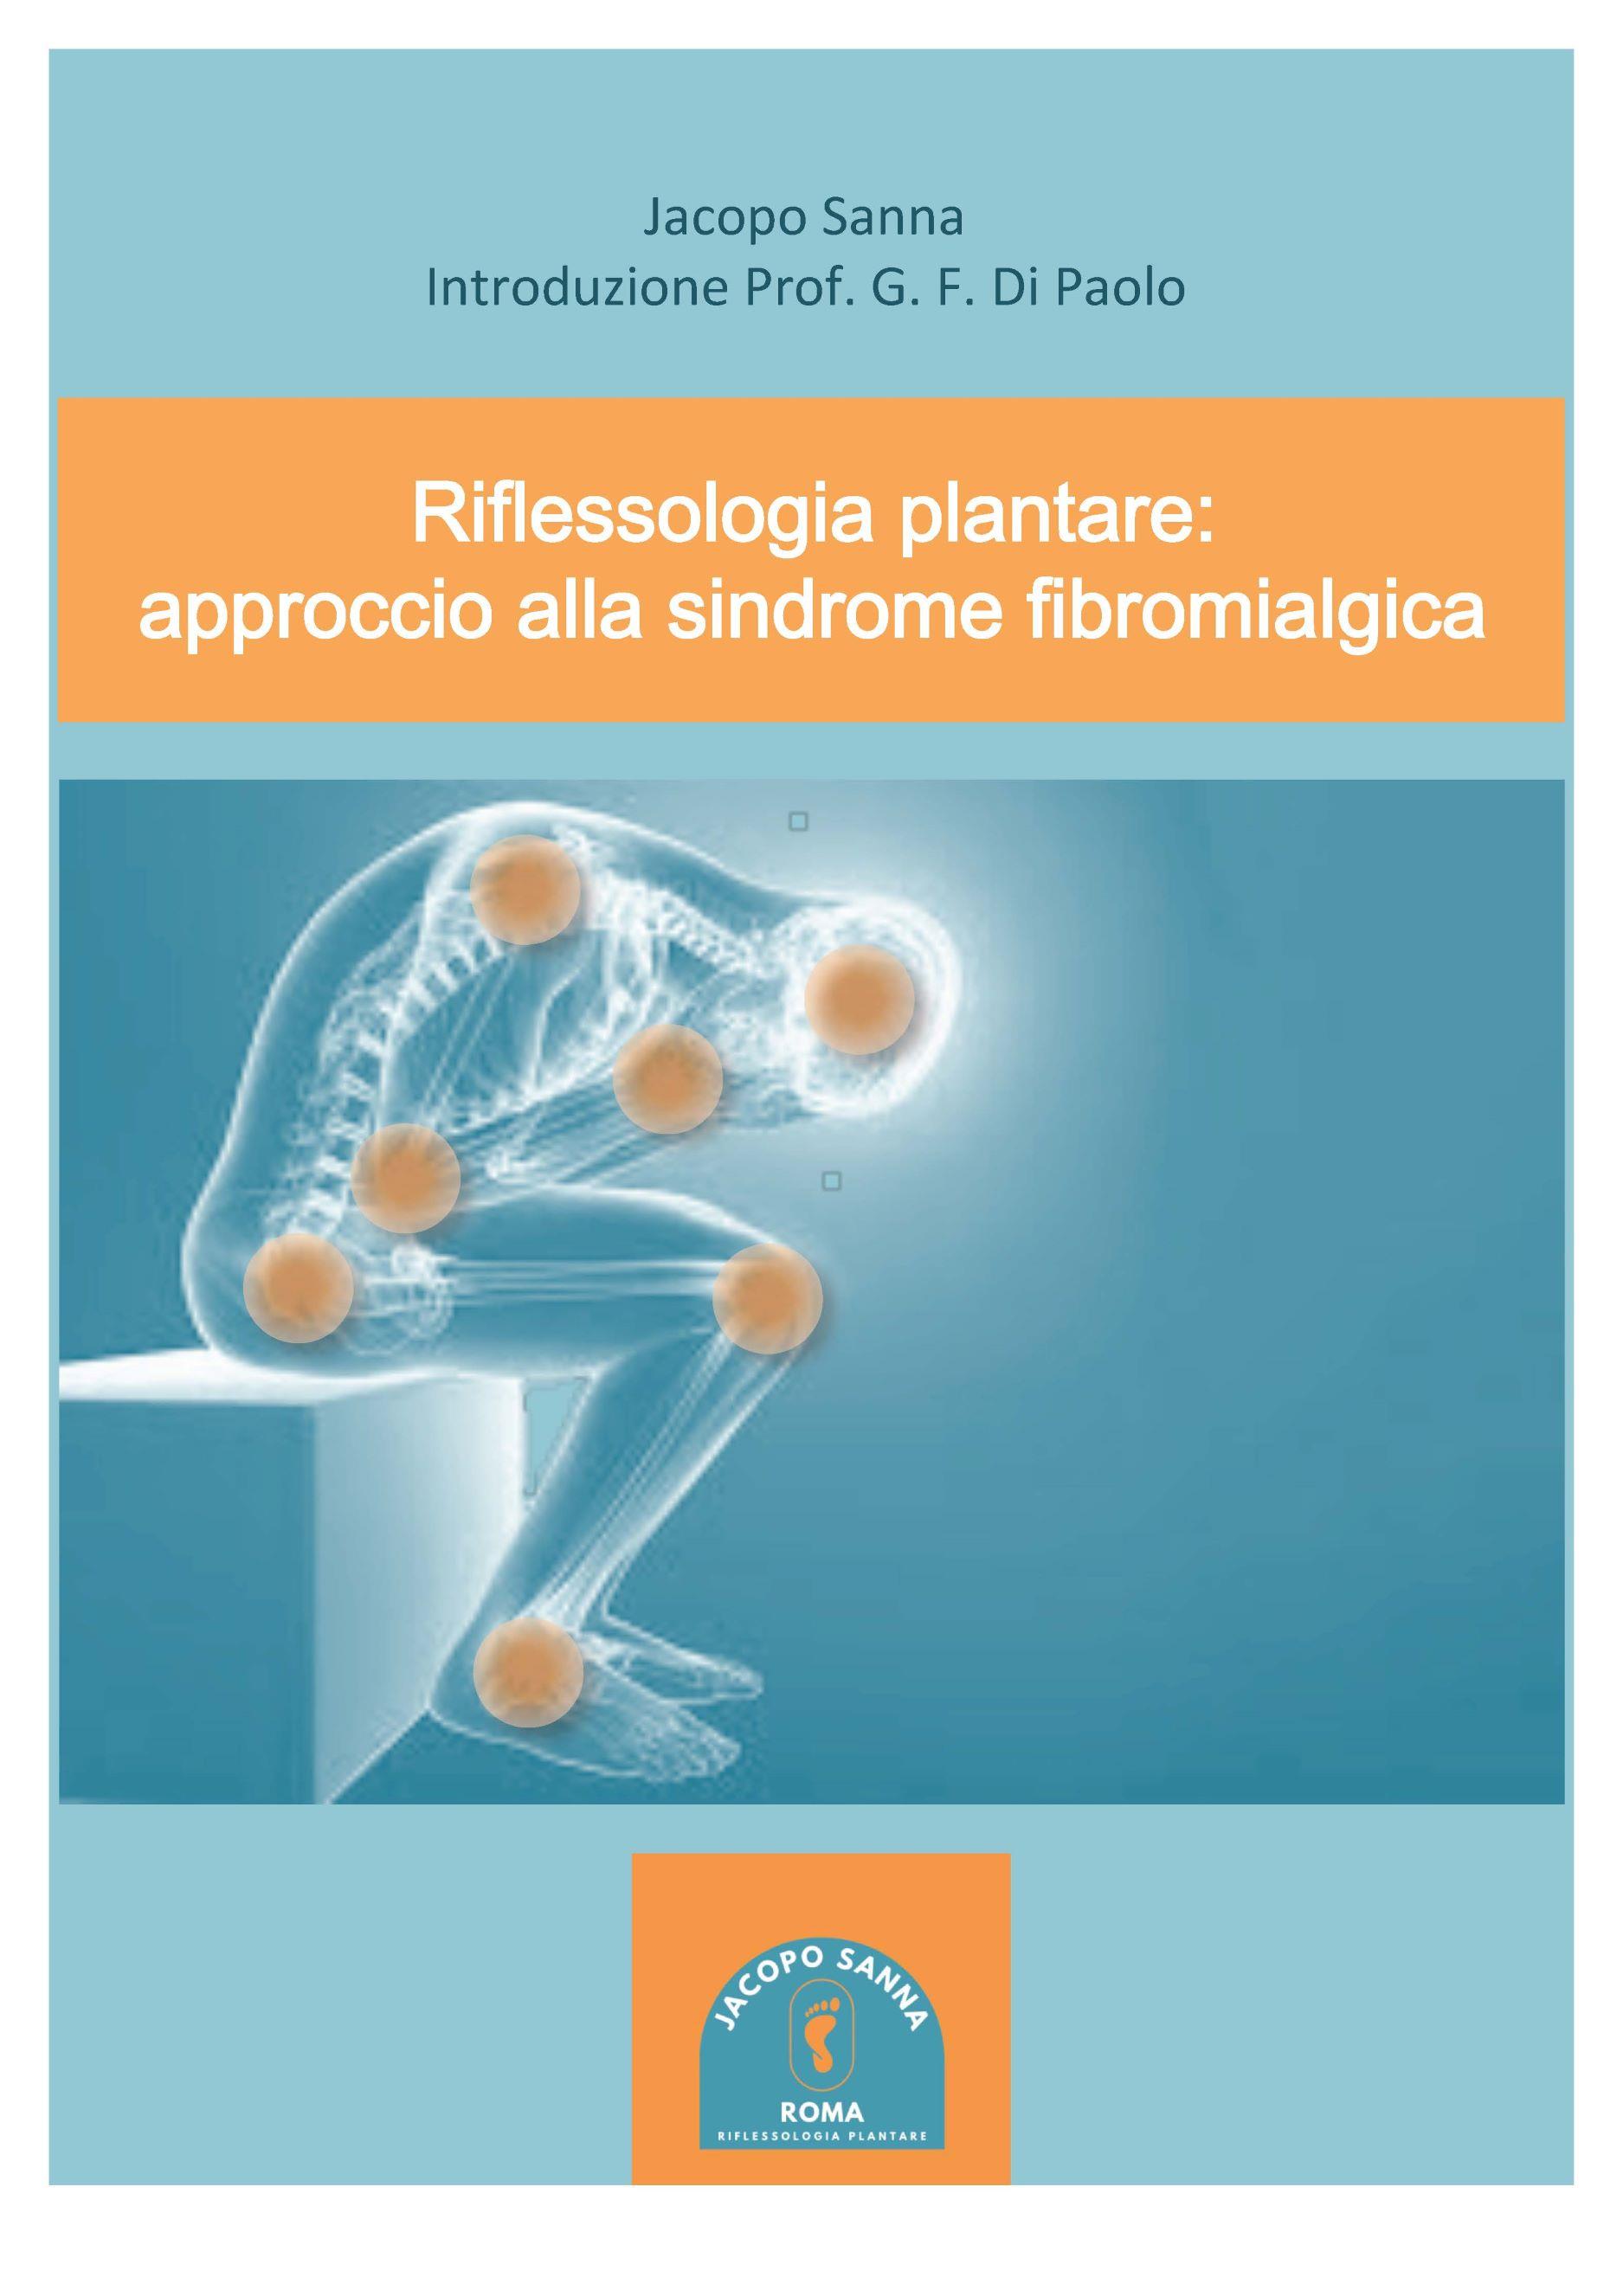 Riflessologia plantare: approccio alla sindrome fibromialgica